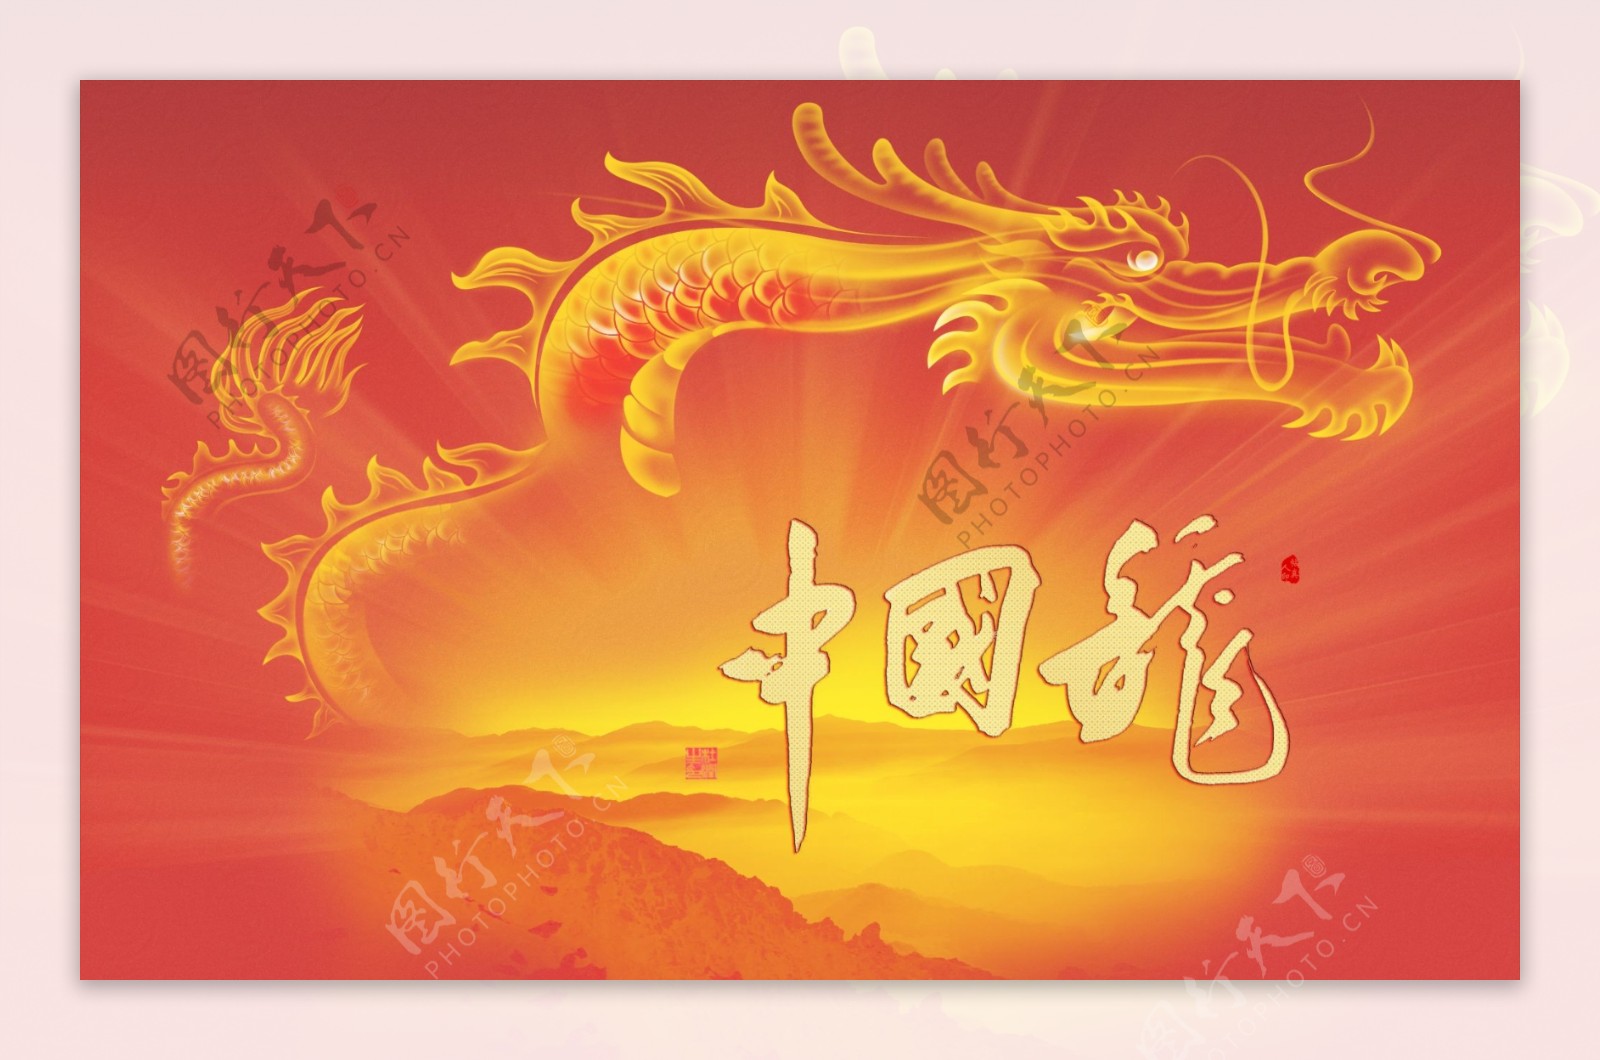 中国龙书法壁纸图片